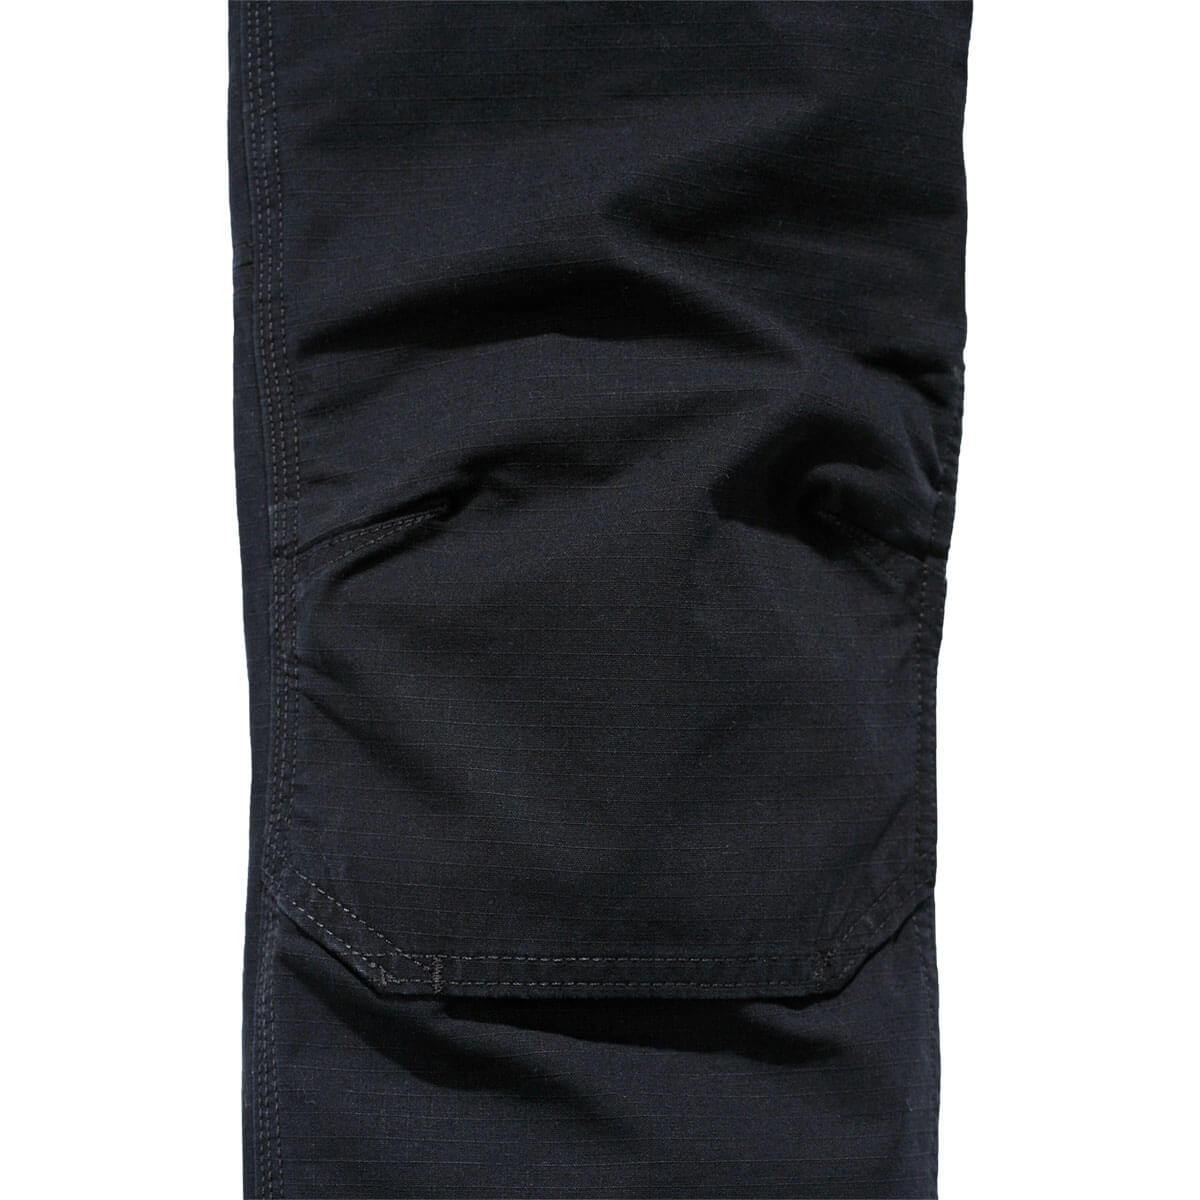 Carhartt Full Swing® broek met dubbele voorkant